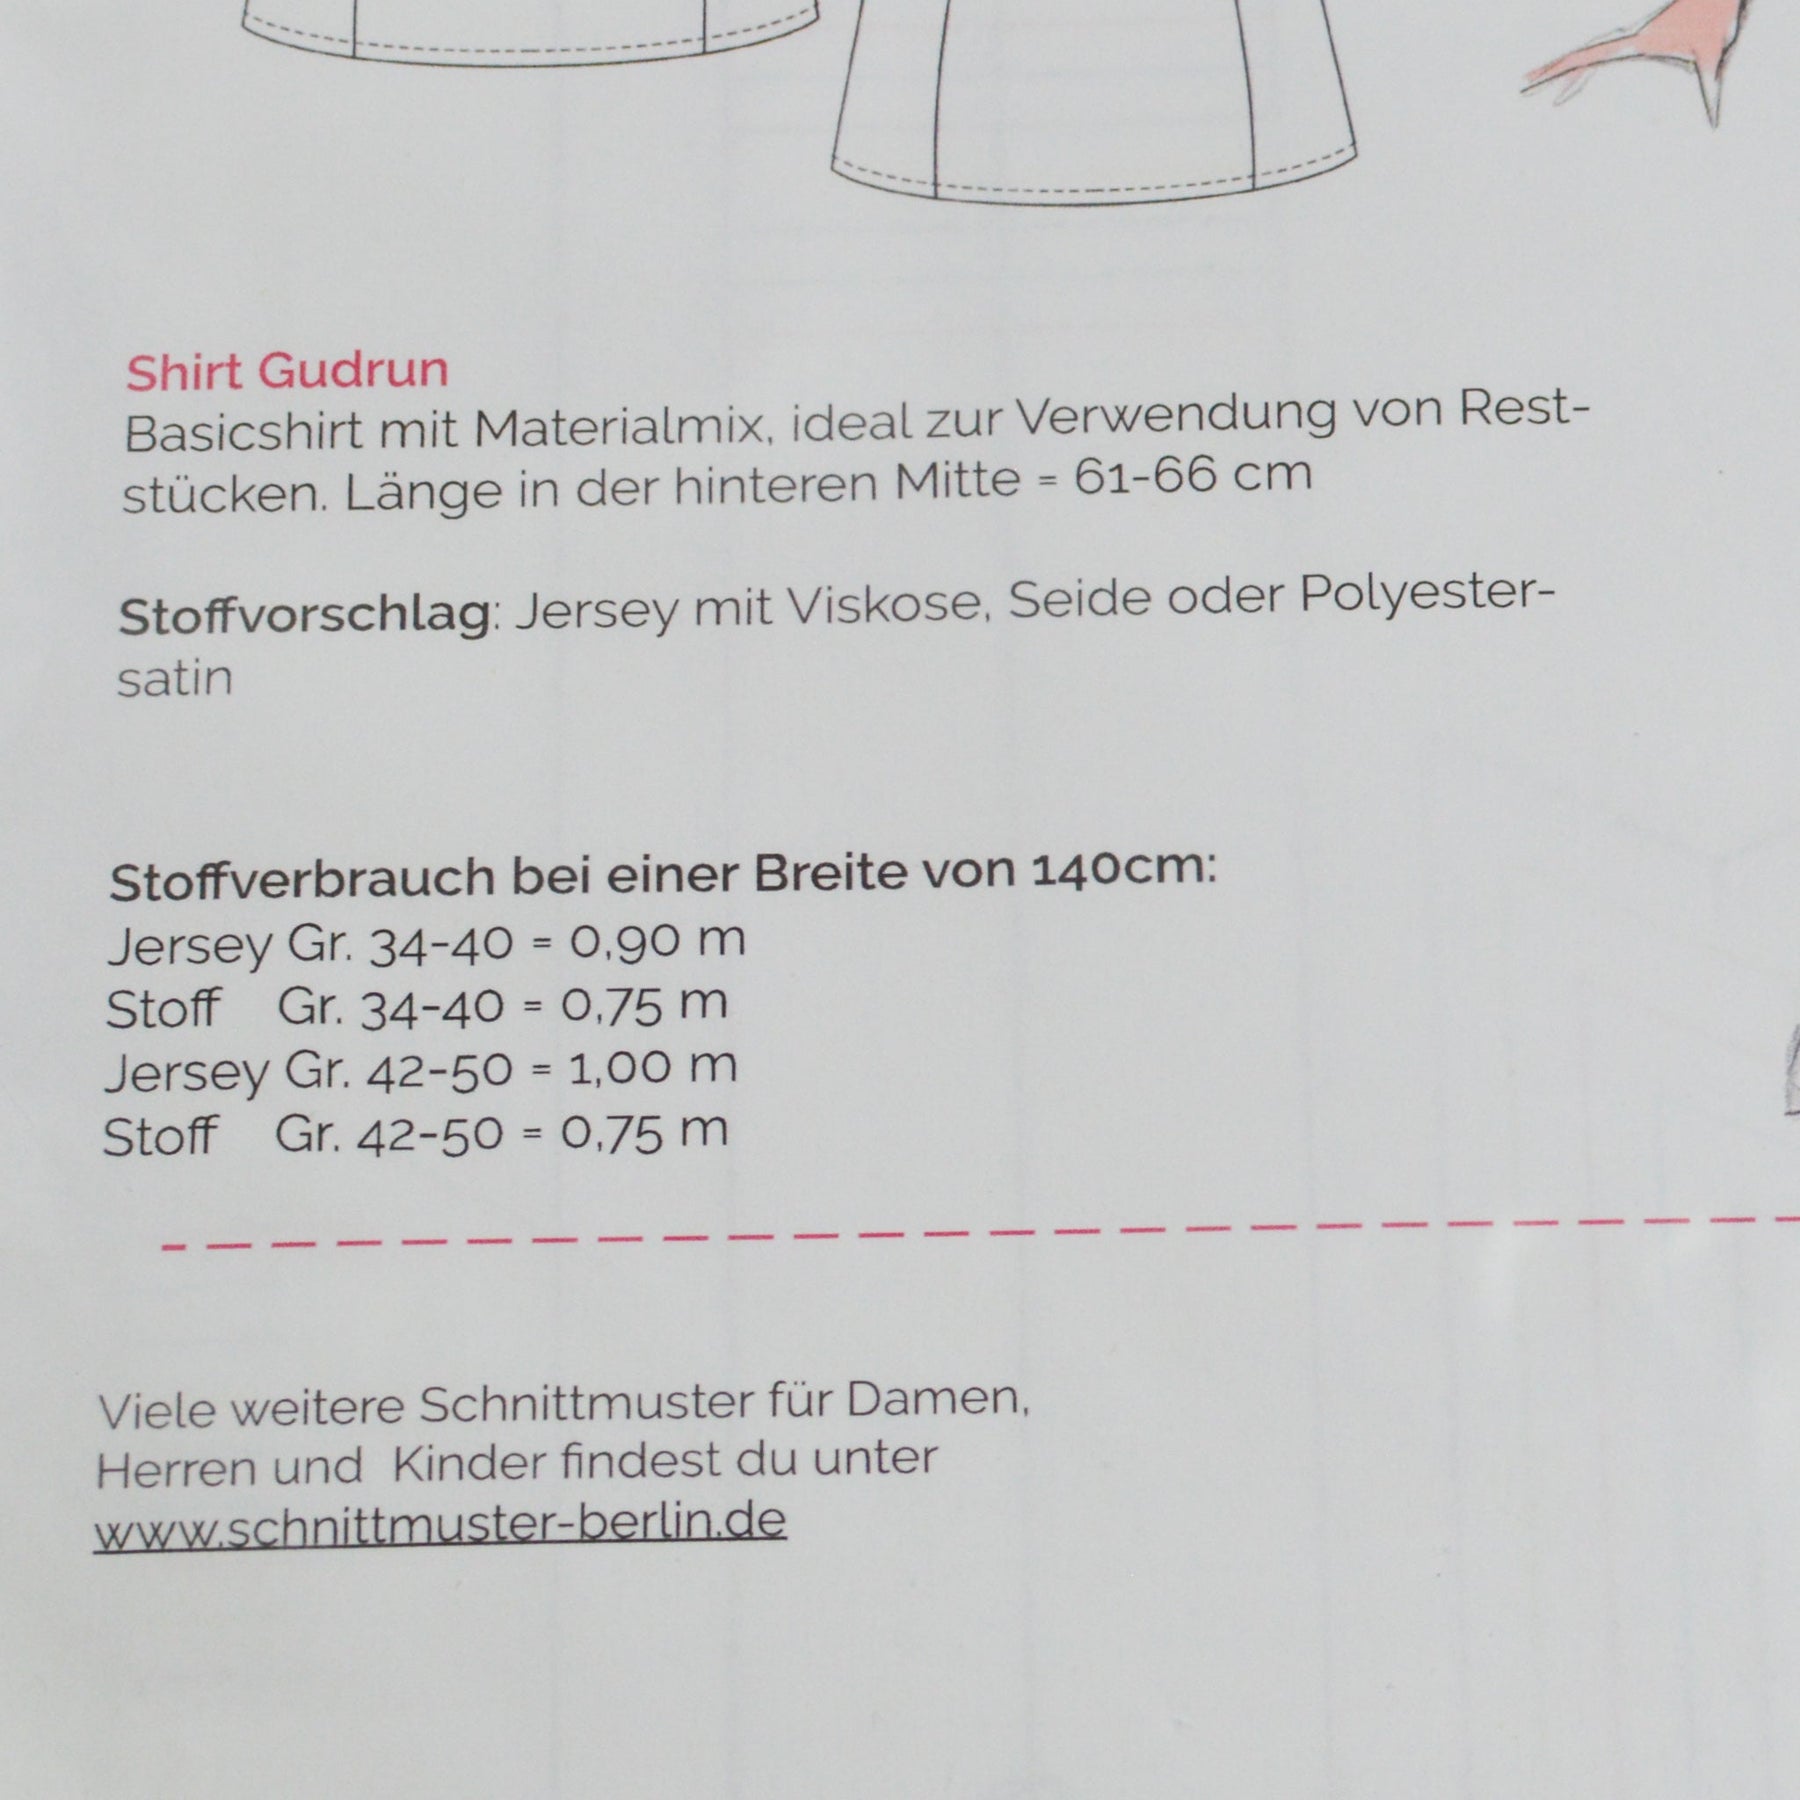 Papierschnittmuster von Schnittmuster Berlin - Shirt Gudrun Stück poshpinks